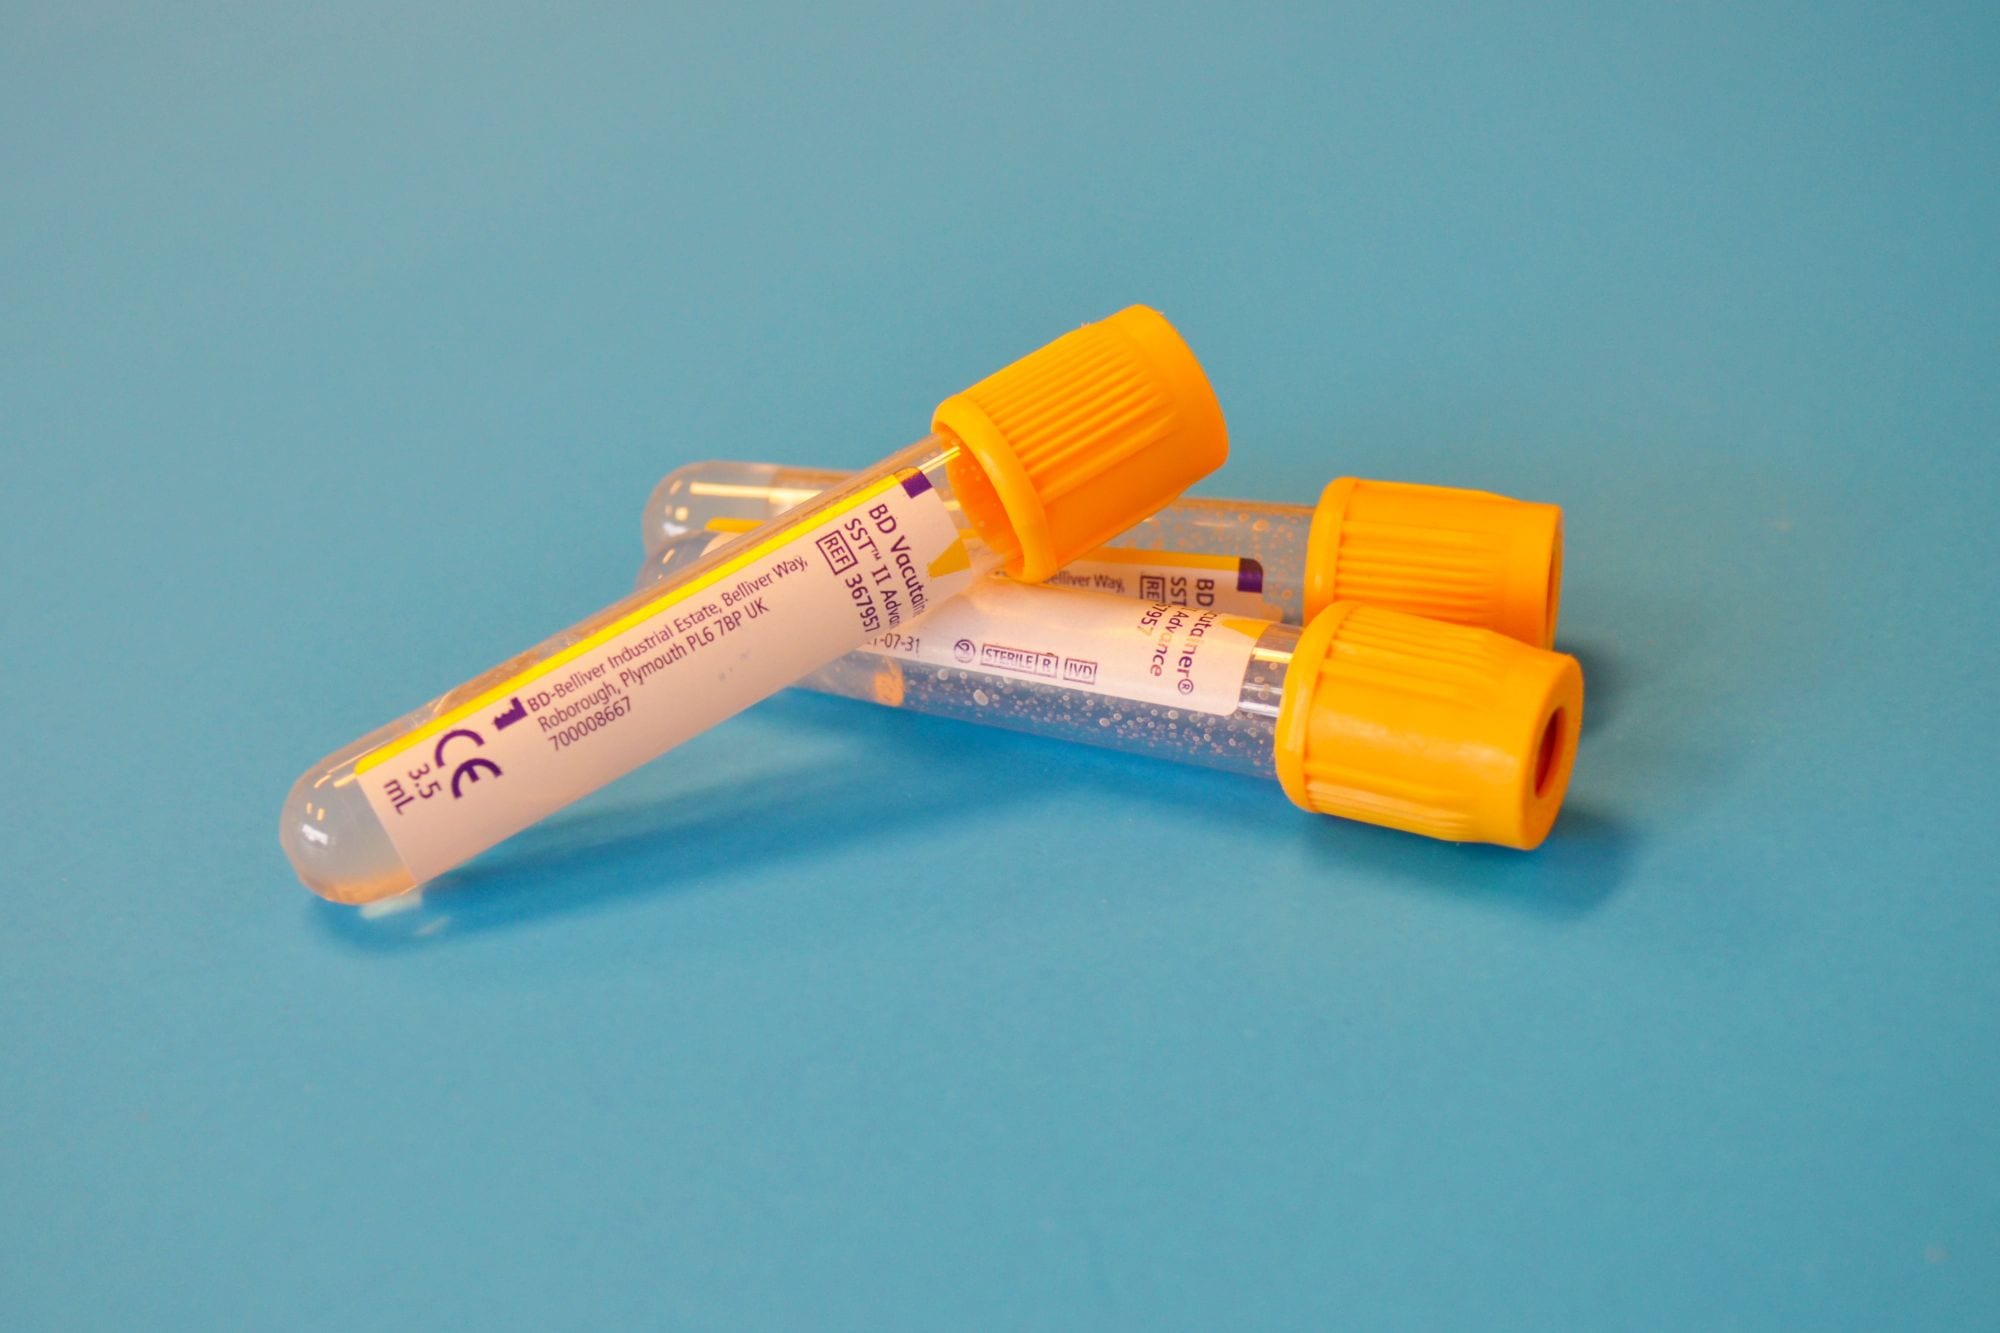 Blood vials for nut allergy blood test